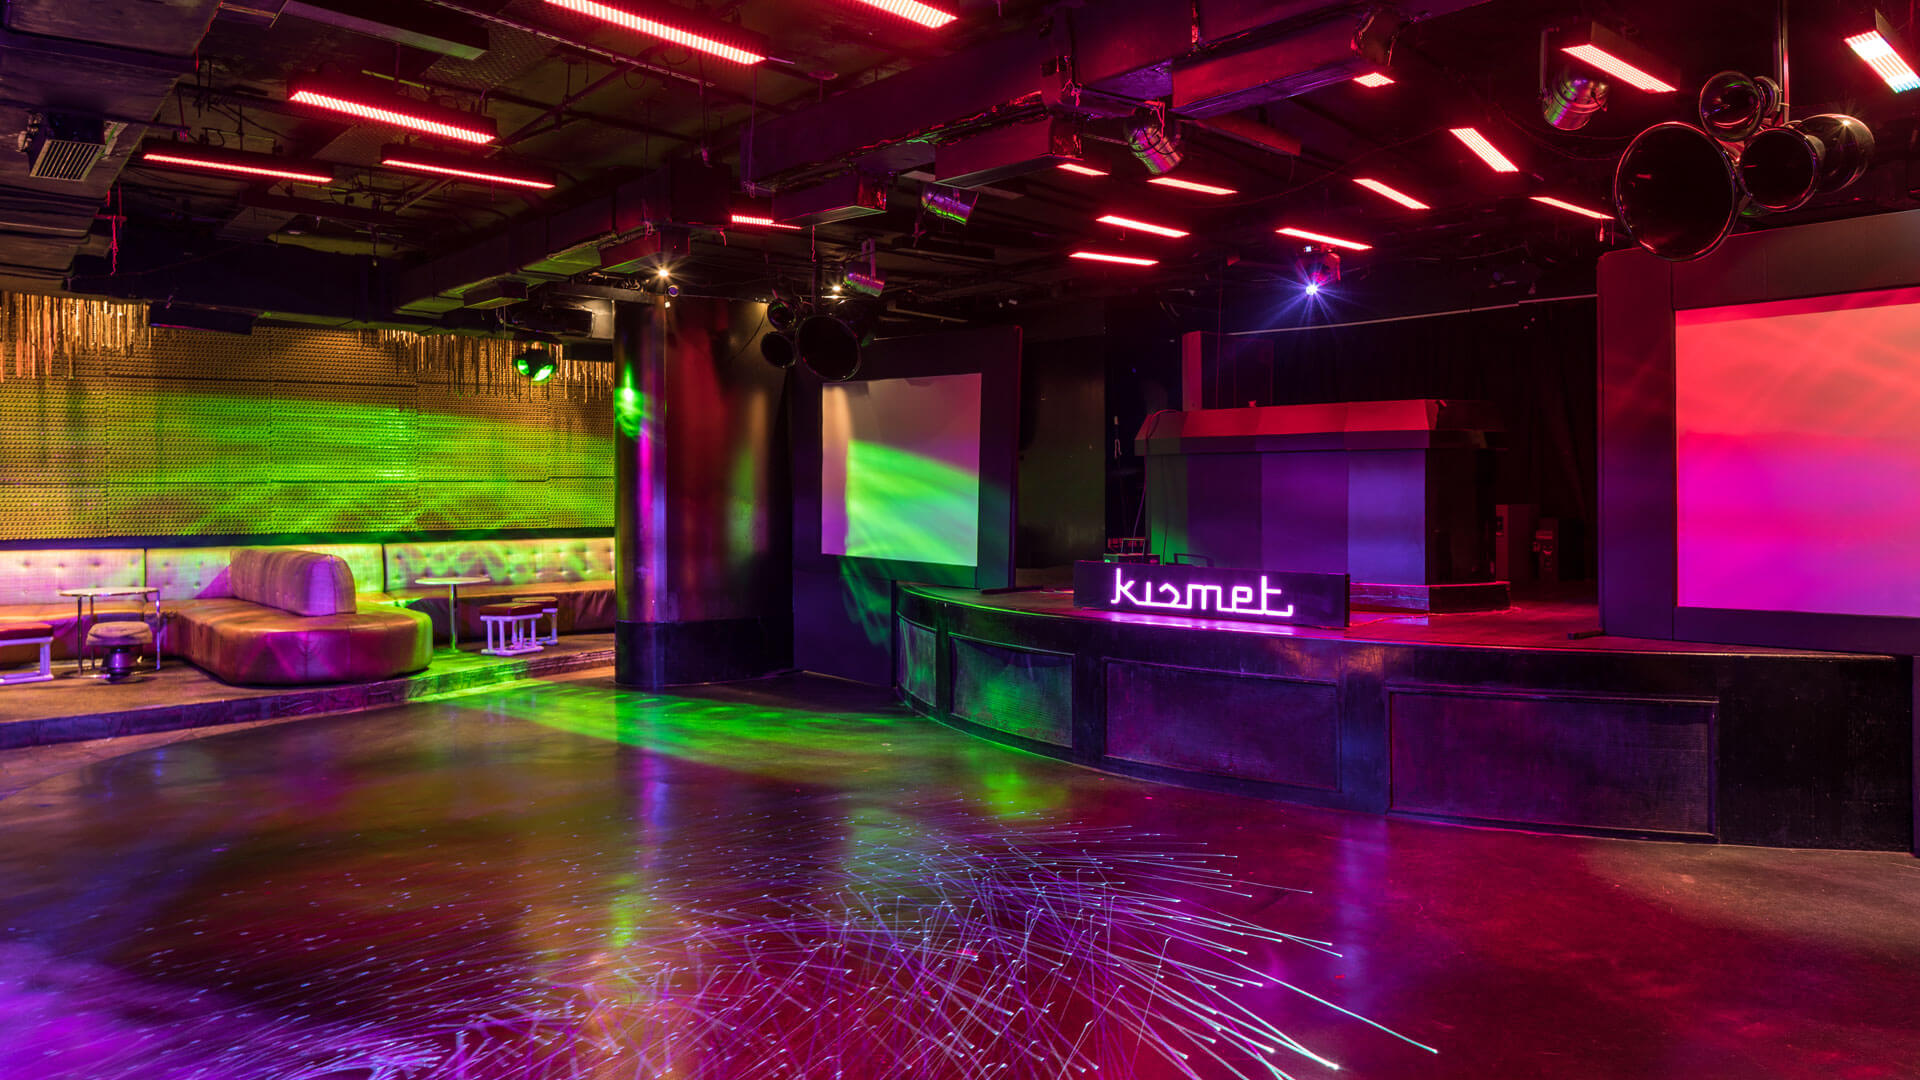 Dancing Floor at Kismet Club and Bar